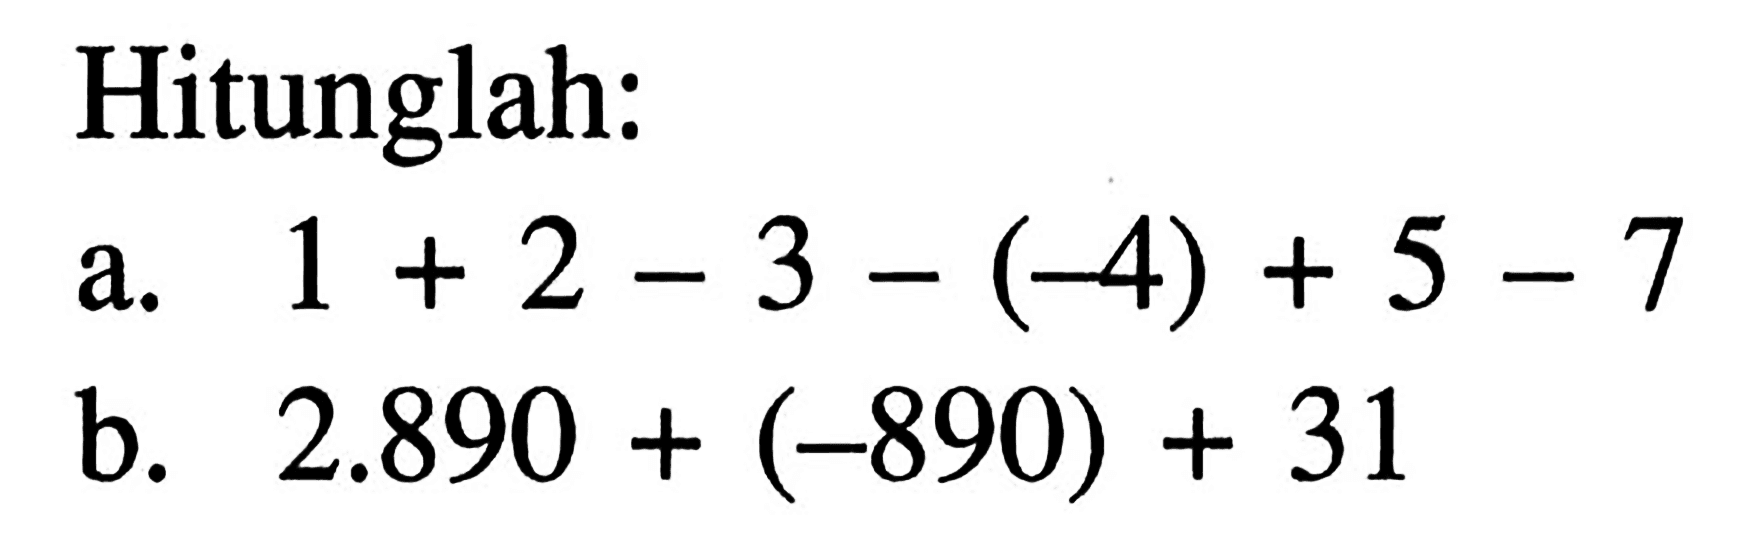 Hitunglah: a. 1 + 2 - 3 - (-4) + 5 - 7 b. 2.890 + (-890) + 31